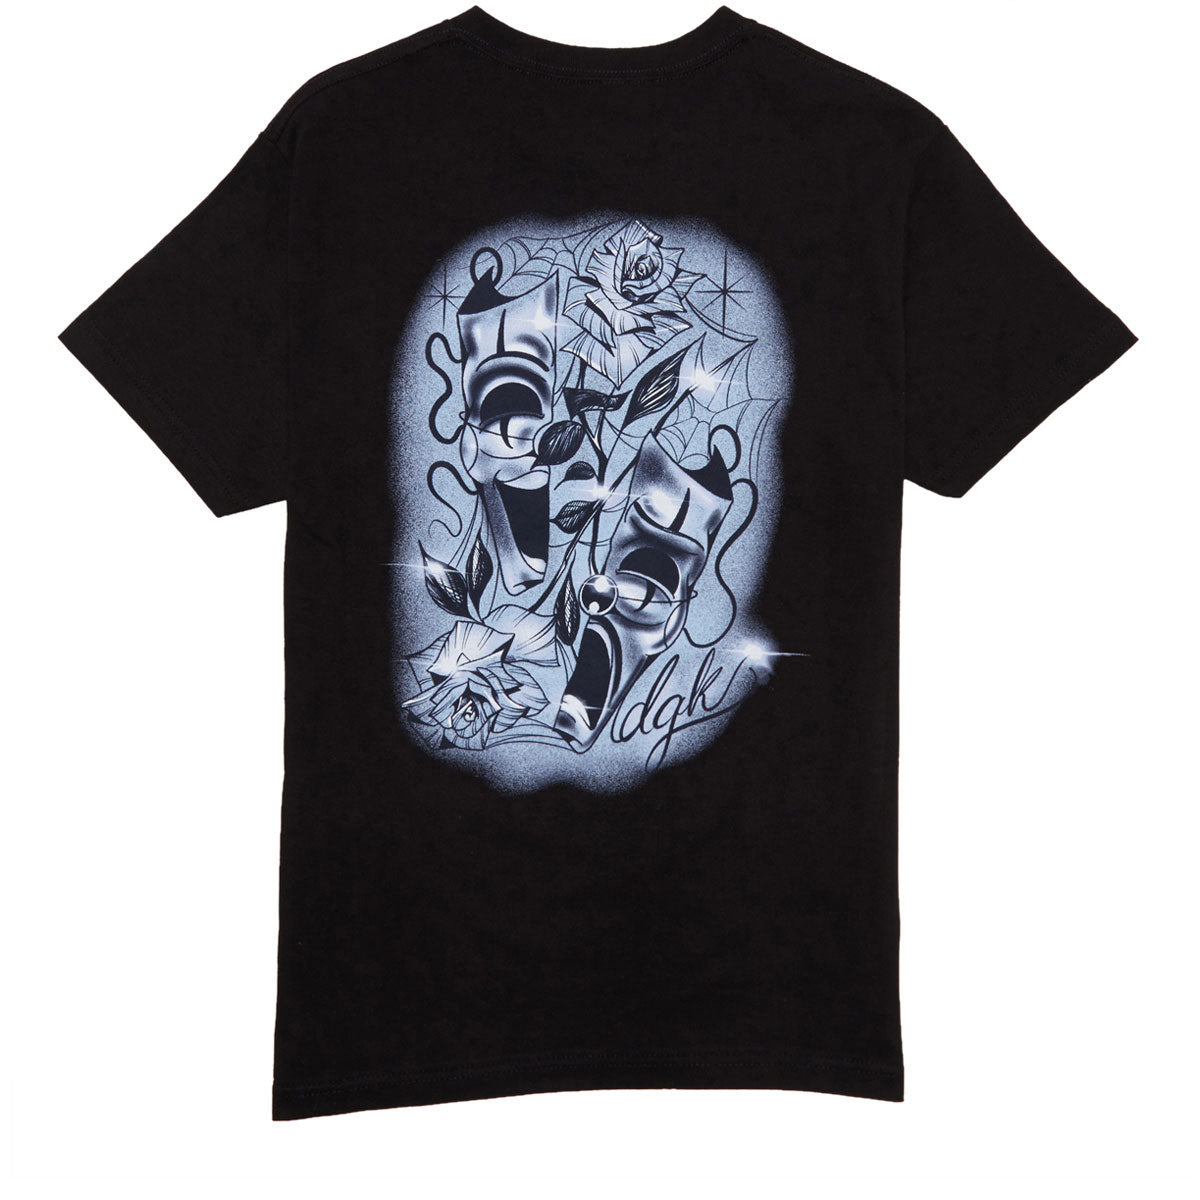 DGK Split T-Shirt - Black image 1